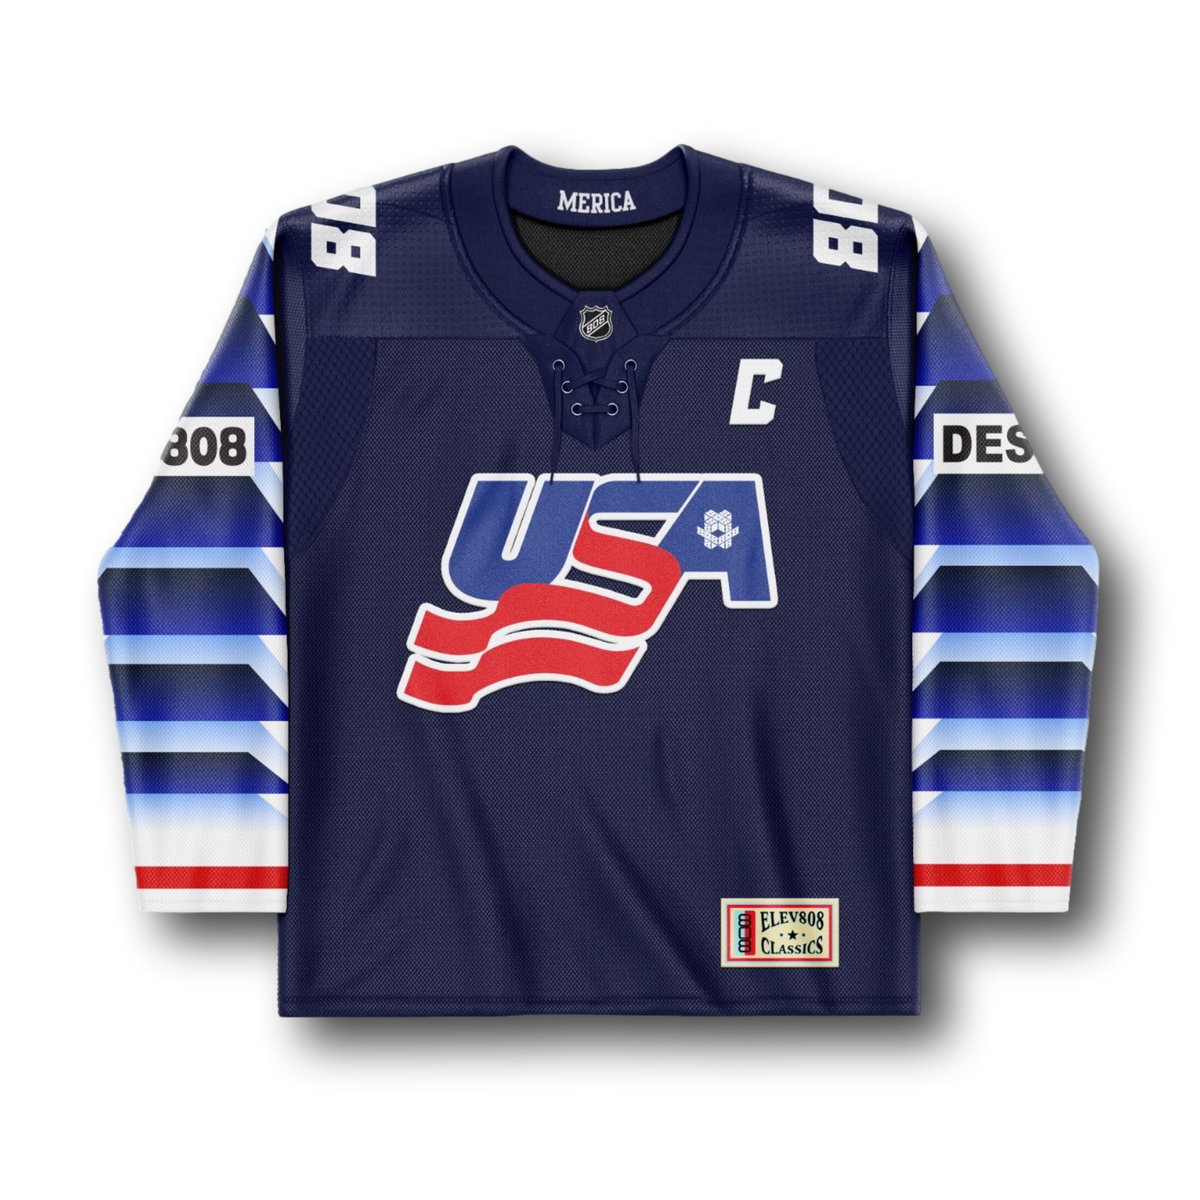 USA 808 Blue Hockey Jersey - LE75